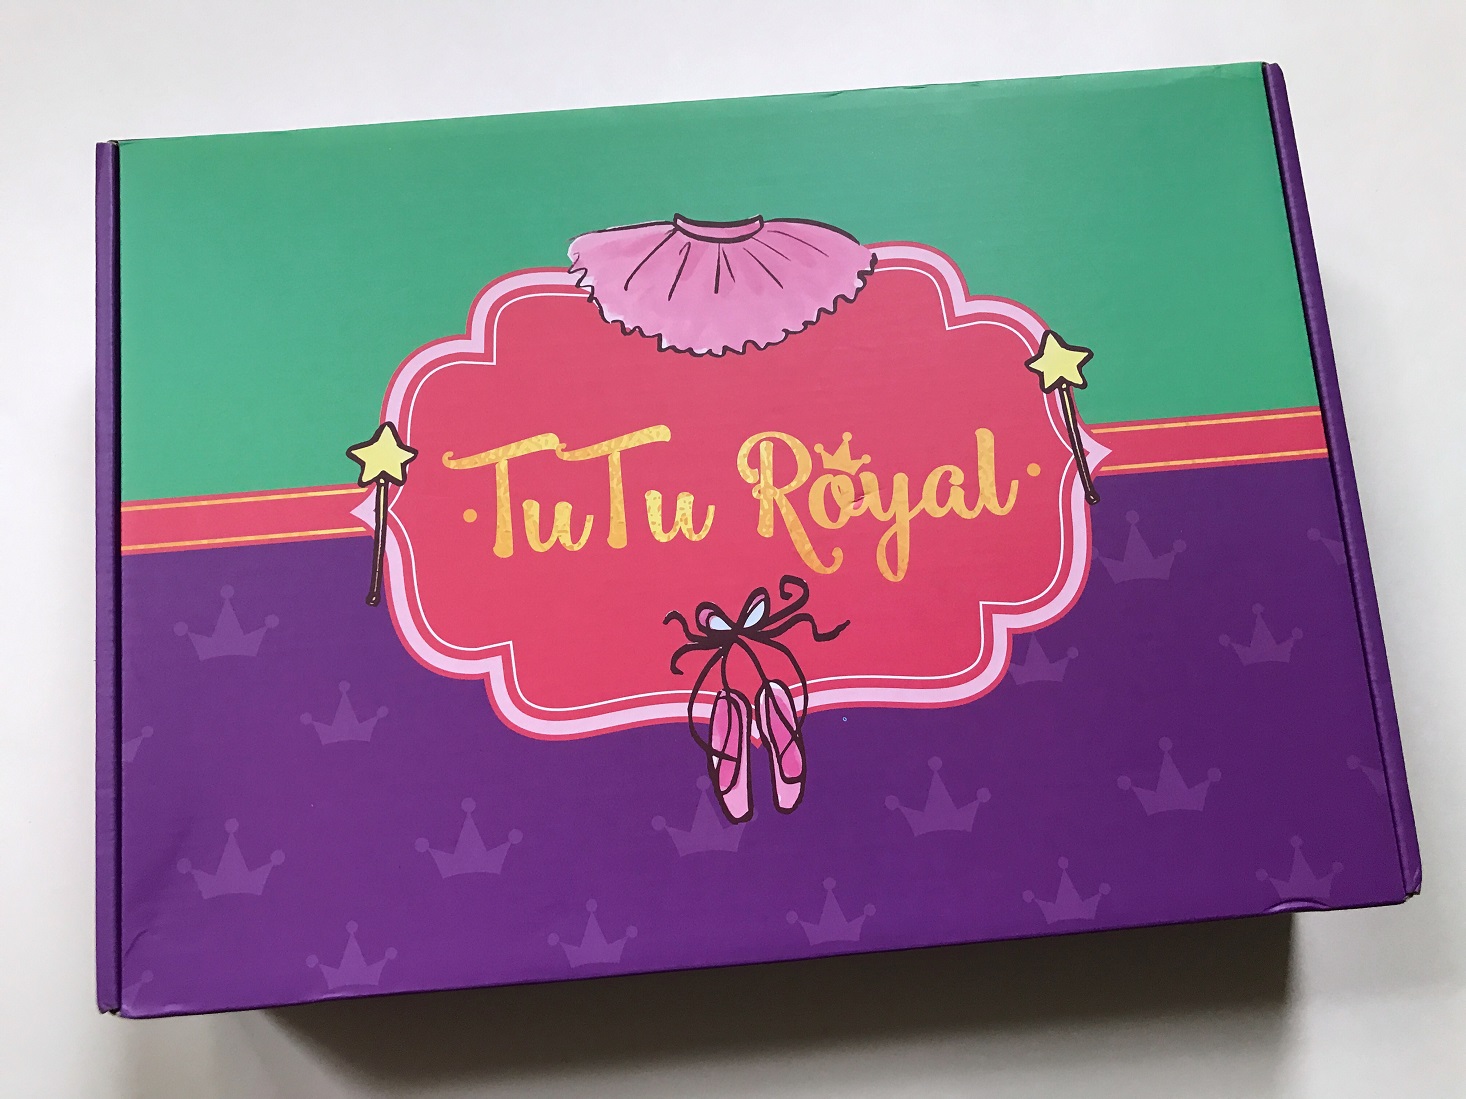 TuTu Royal Subscription Box Review – November 2017